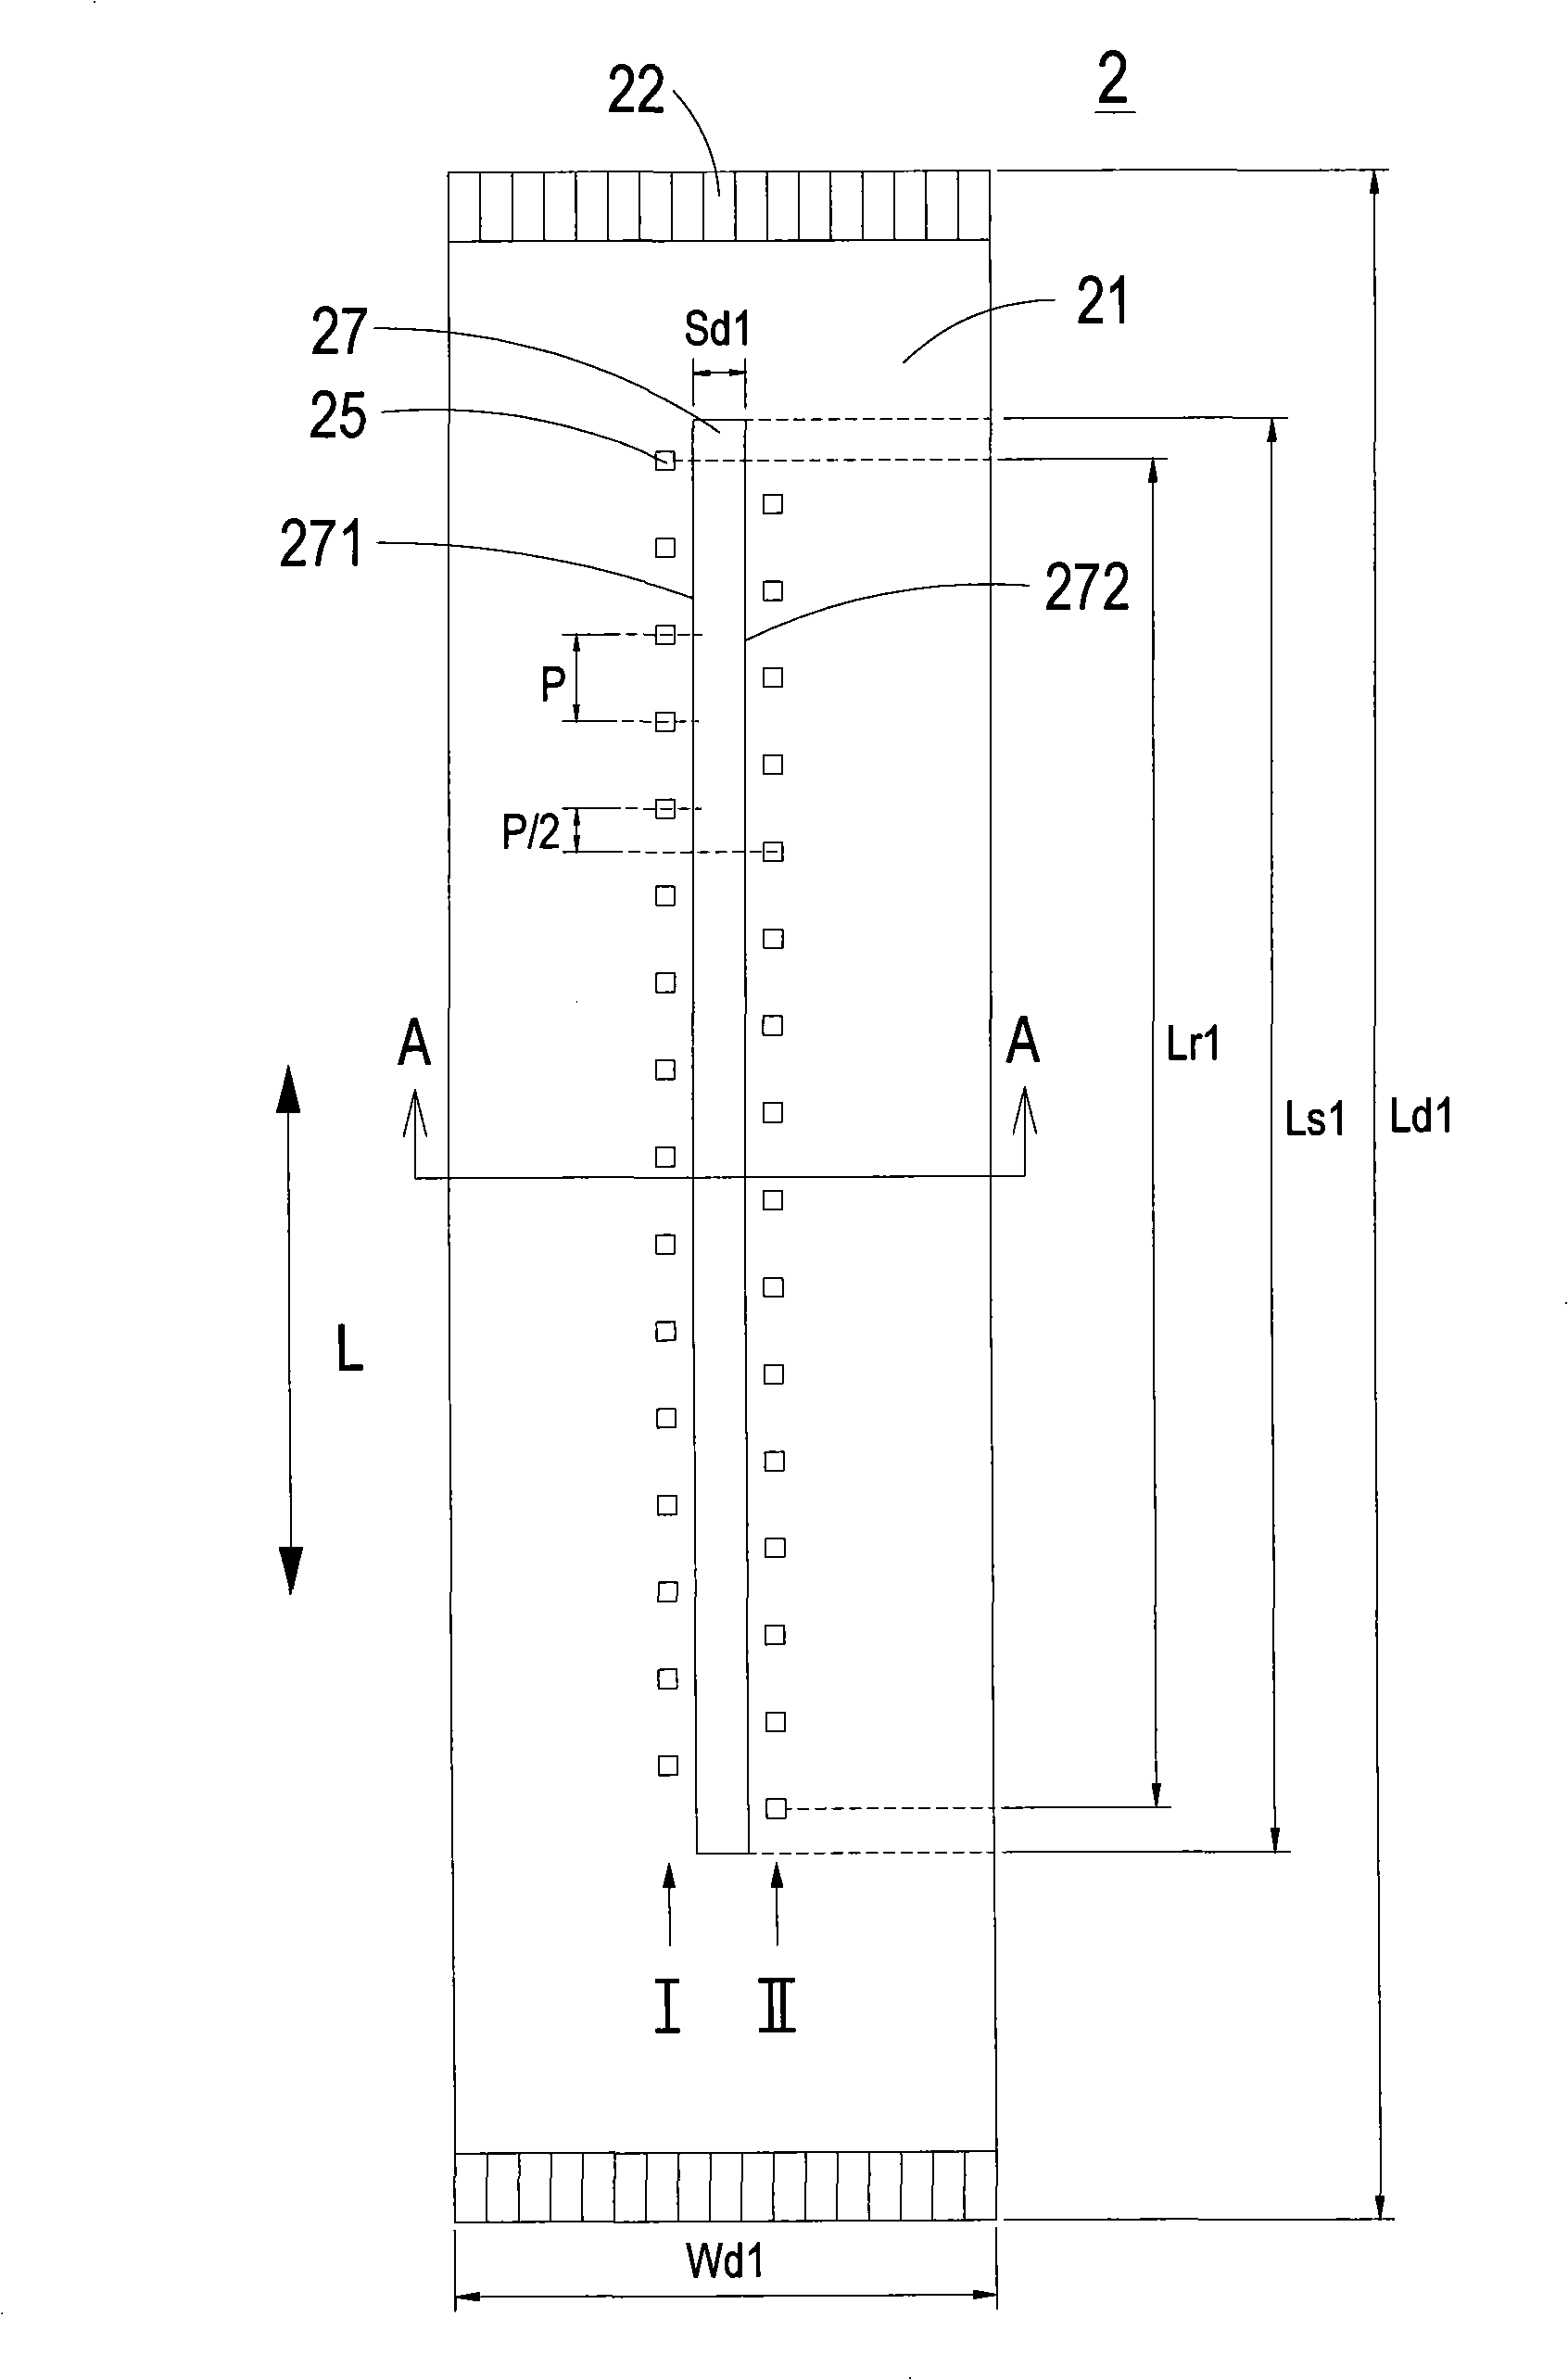 Monochrome ink gun structure